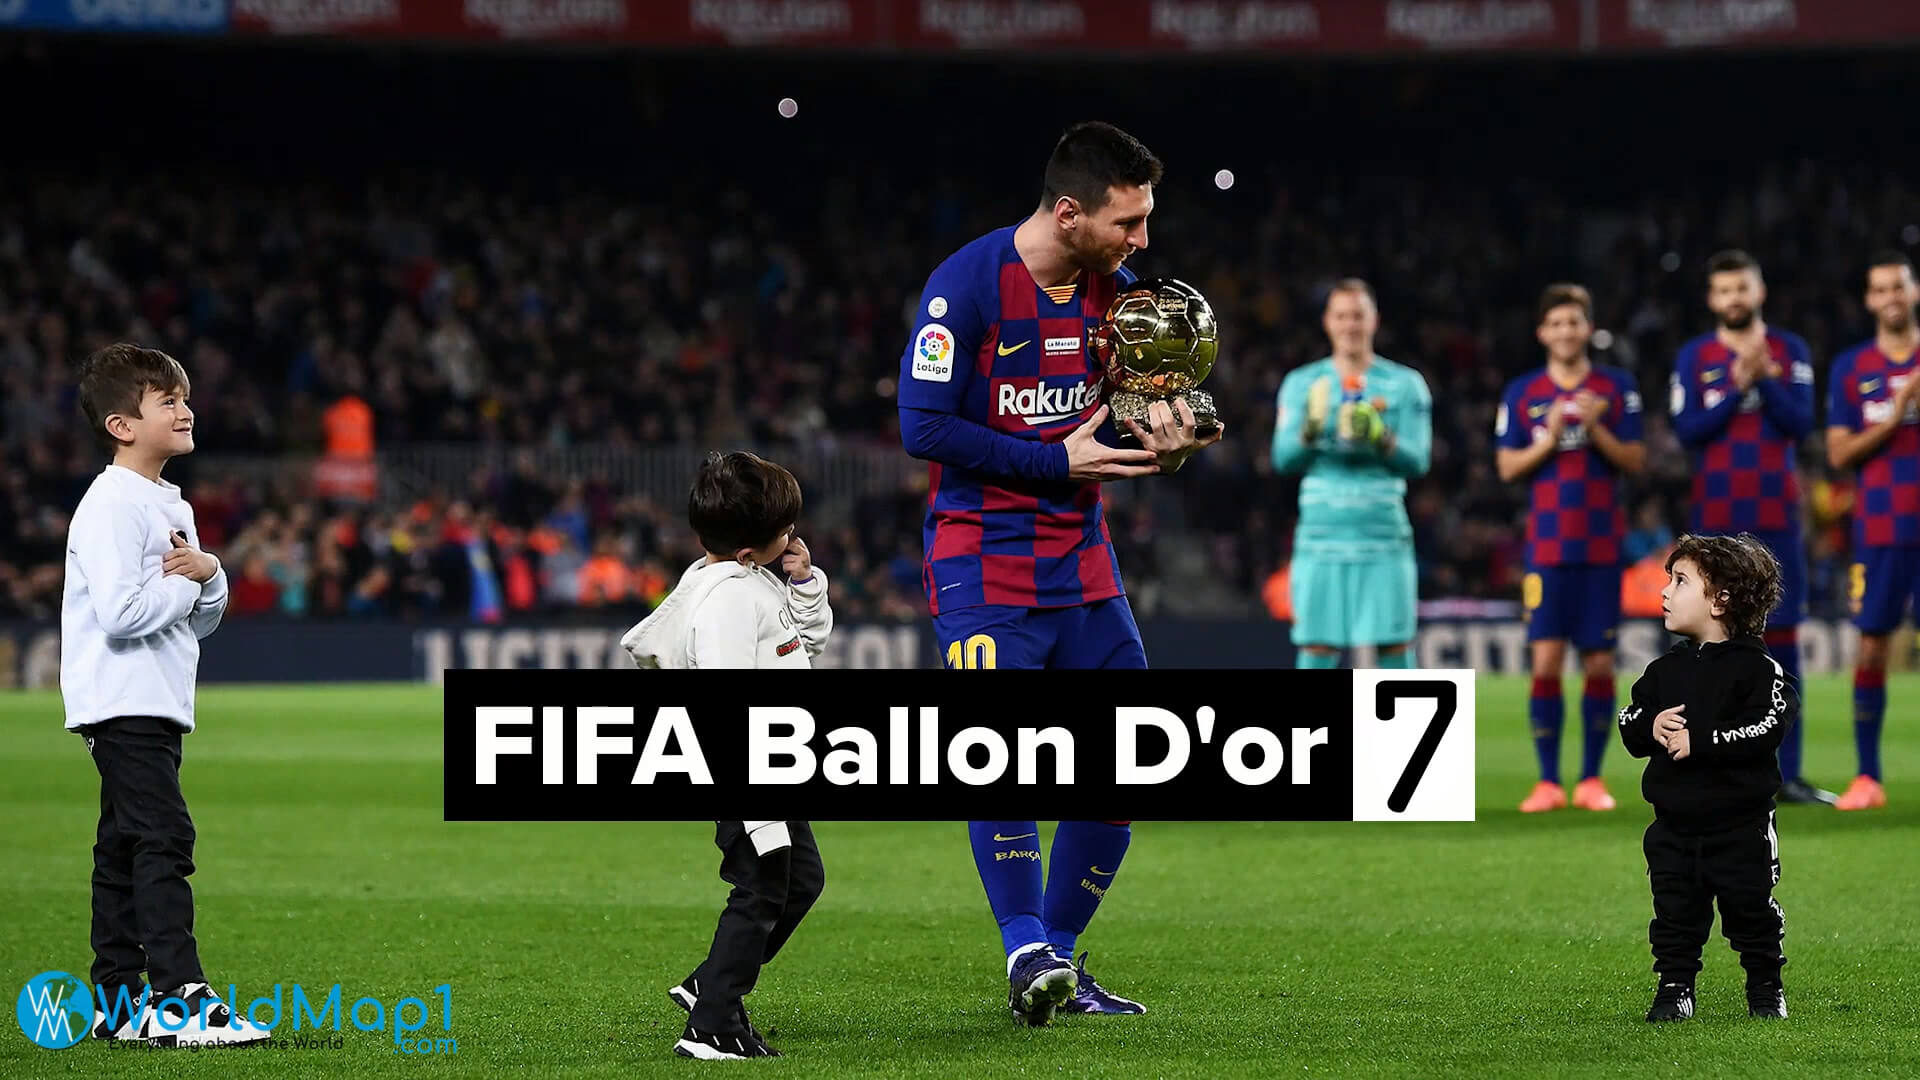 Lionel Messi remporte 7 fois le Ballon d'or de la FIFA